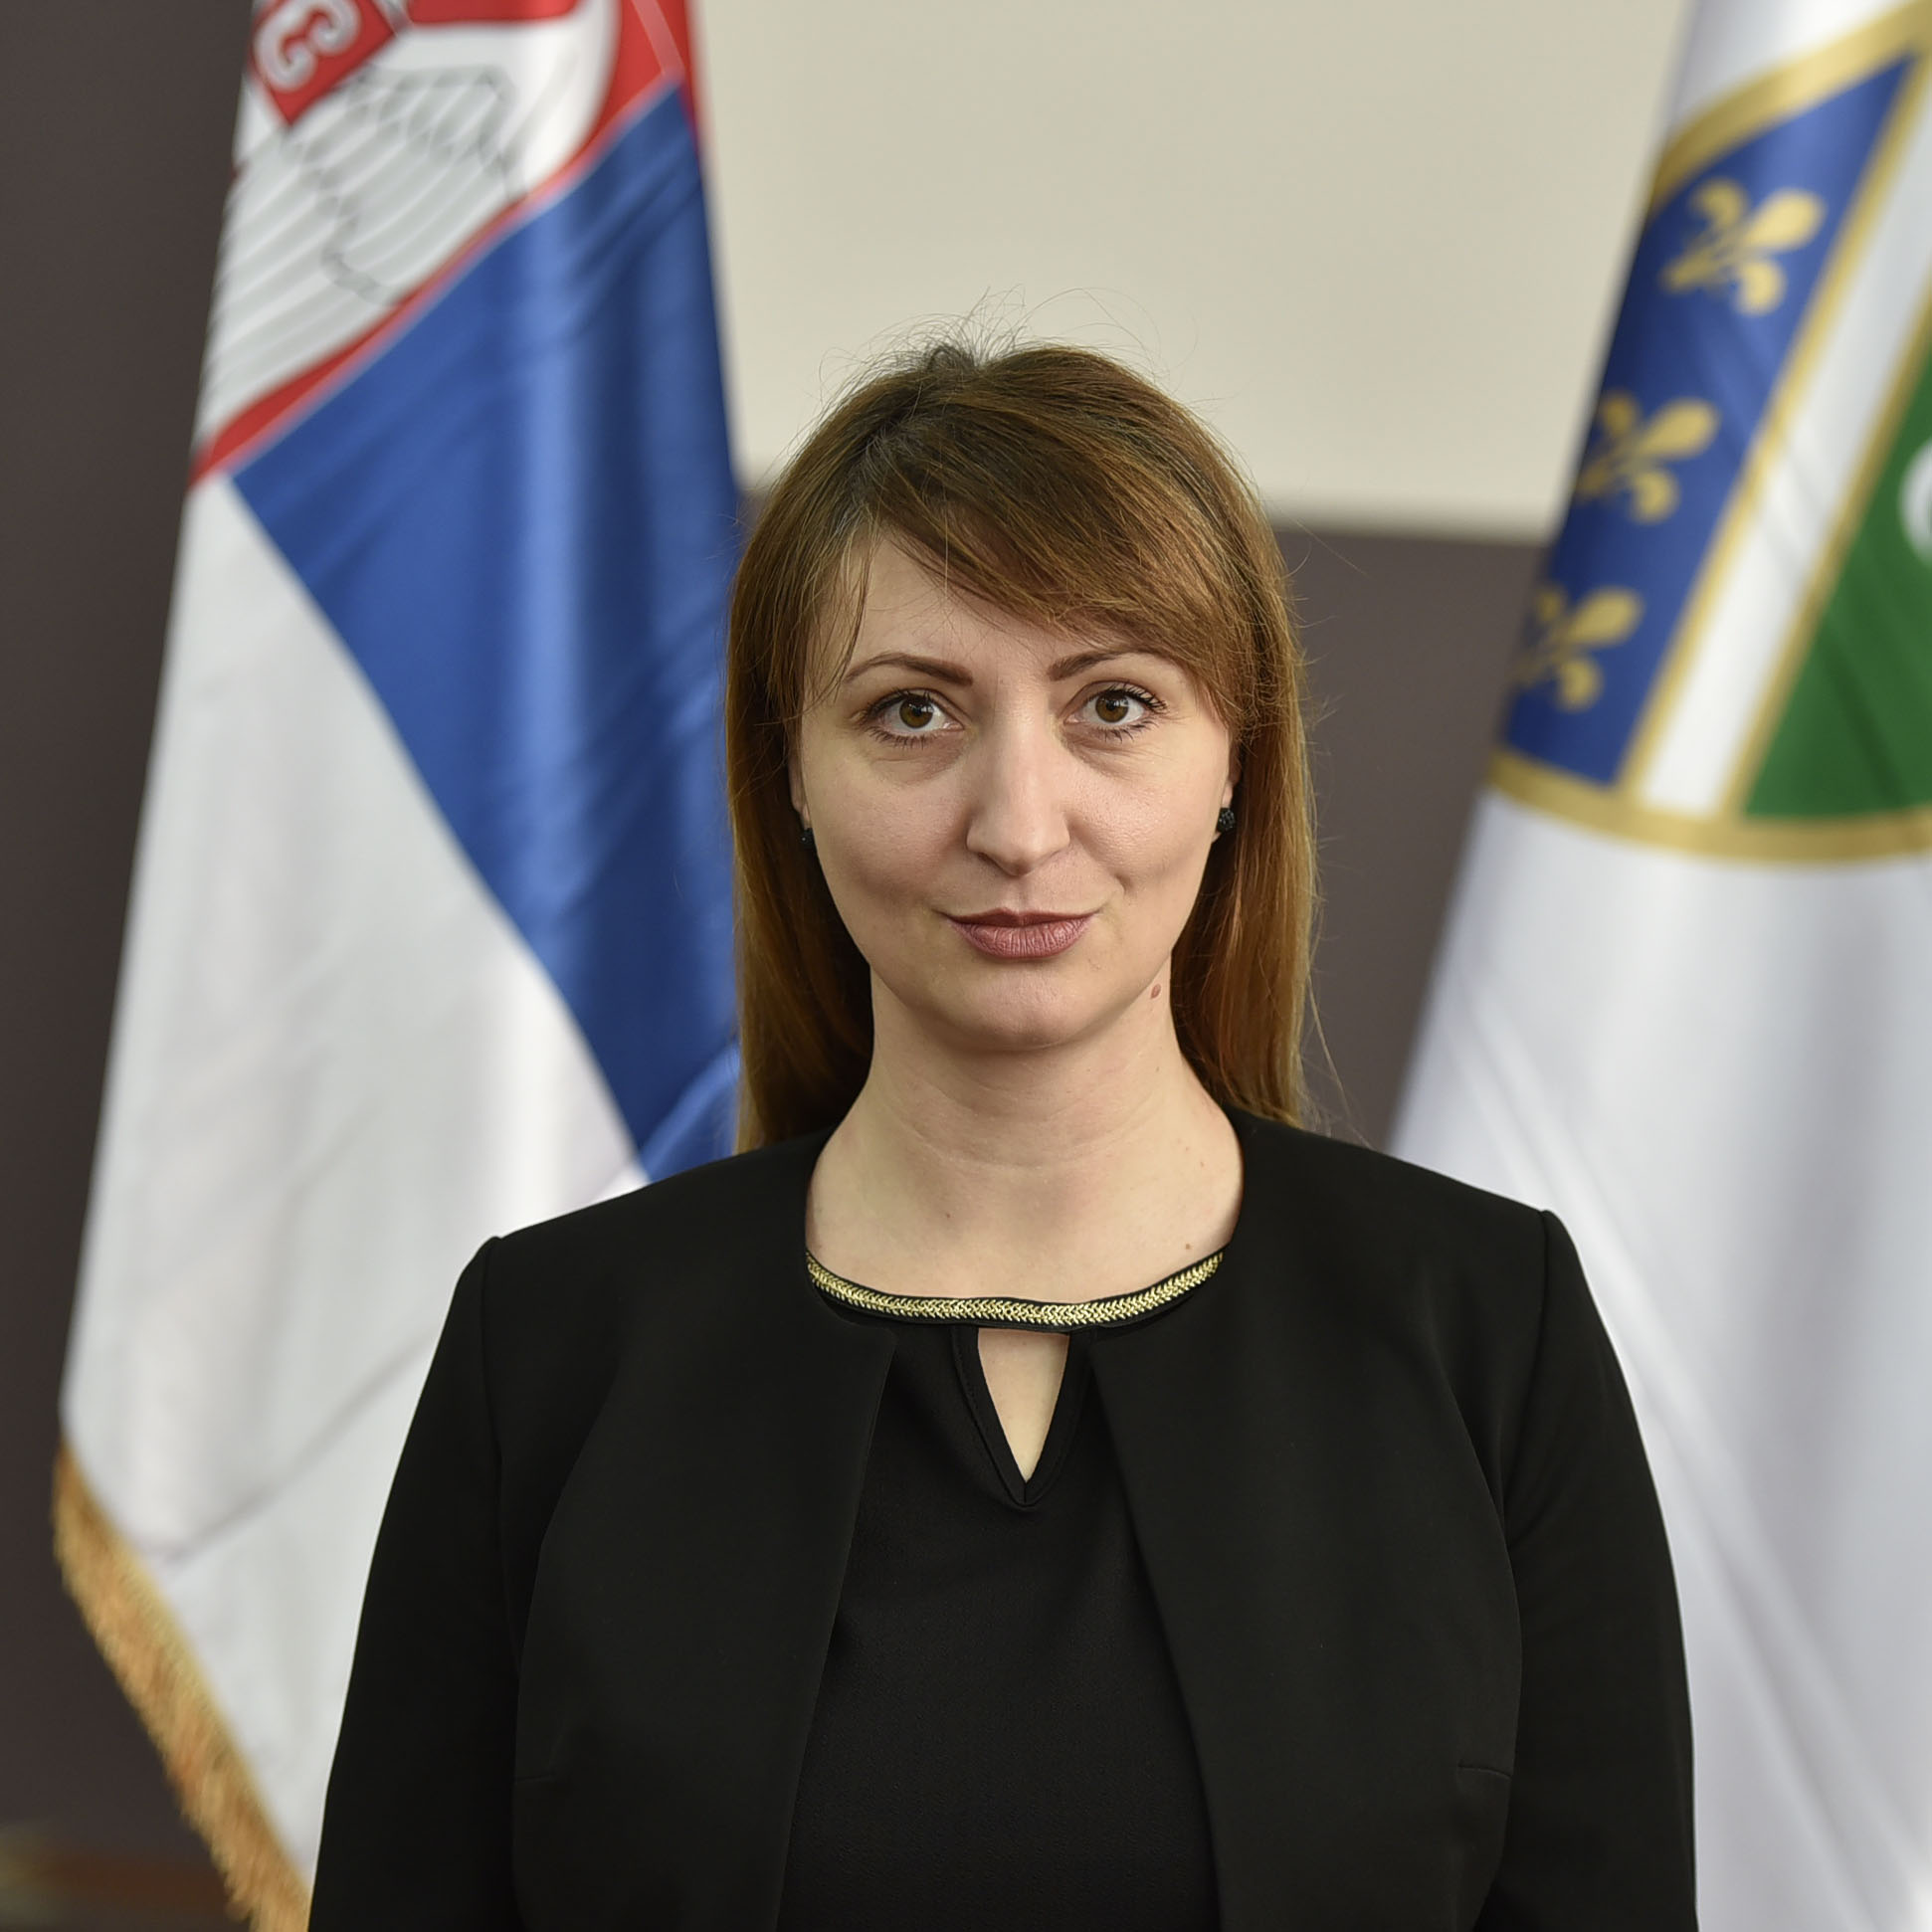 Amela Zoranić